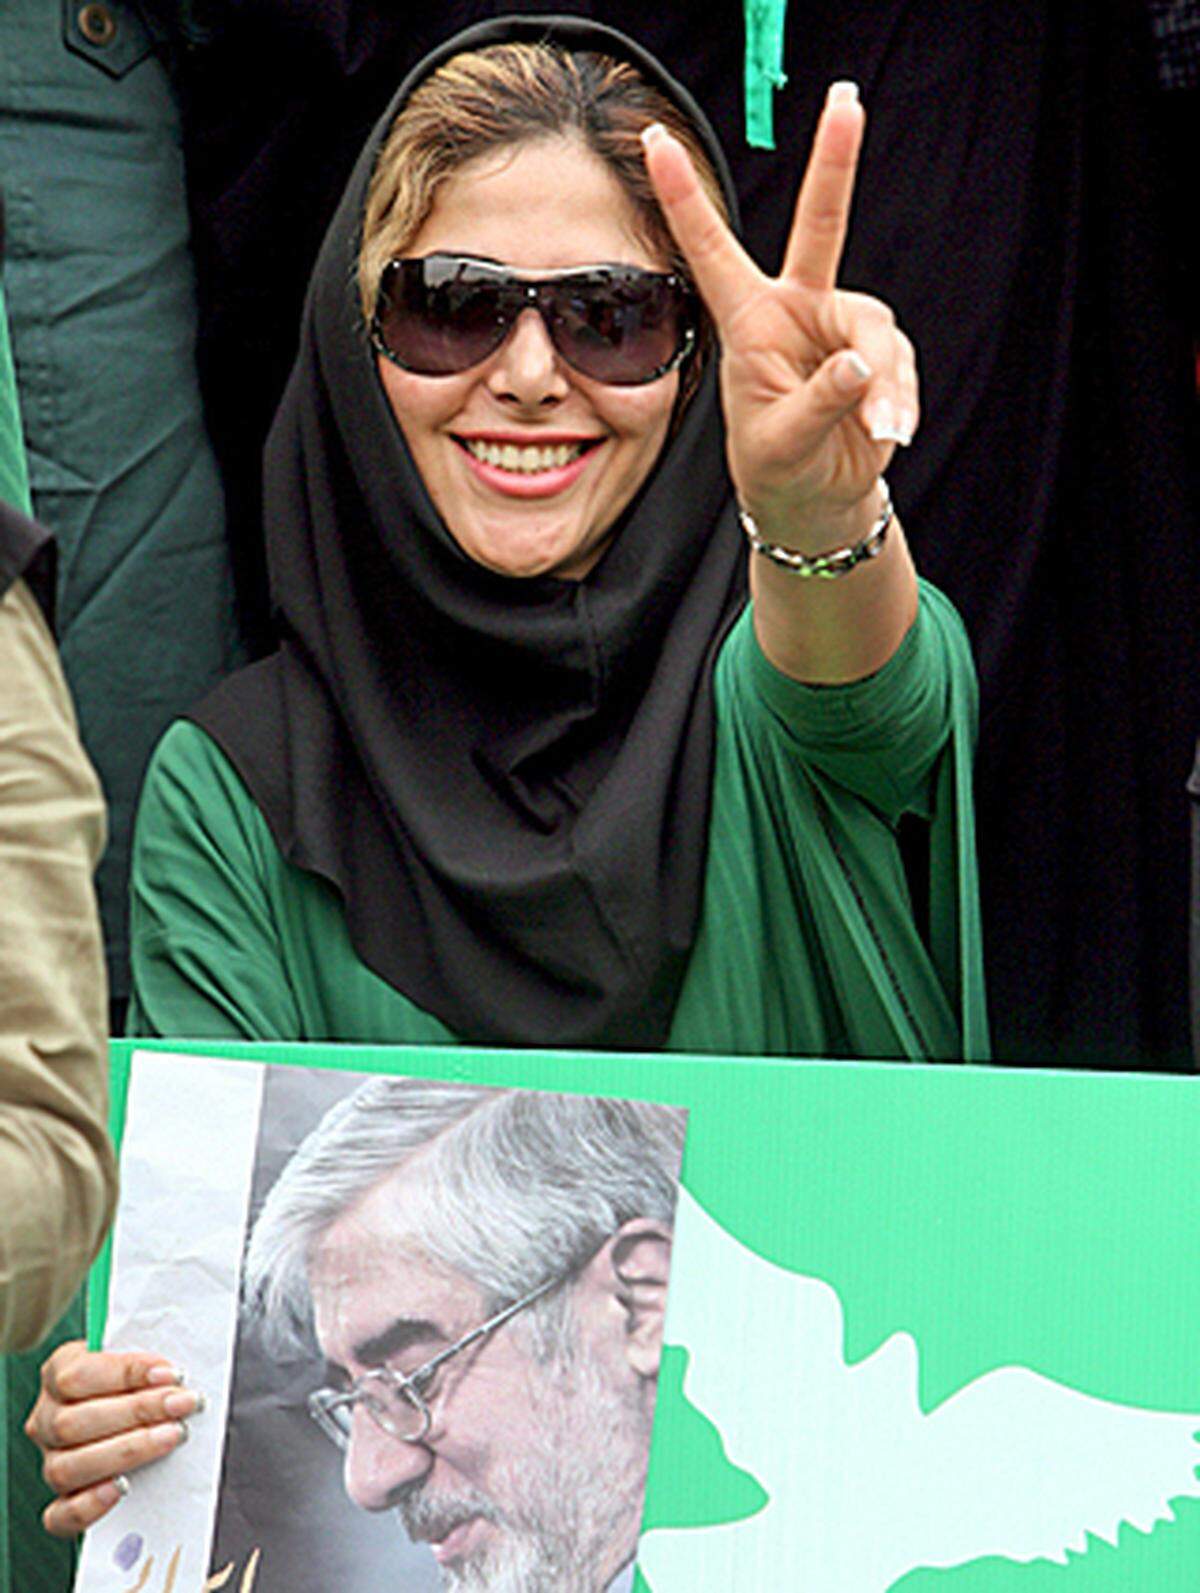 Dementsprechend hielten sich die Frauen, die Moussavi unterstützen, nur rudimentär an die Vorschriften. Unter den recht locker sitzenden Kopfschals sind ihre Haare zu erkennen, sie sind offensiv geschminkt, viele tragen grünen Nagellack.